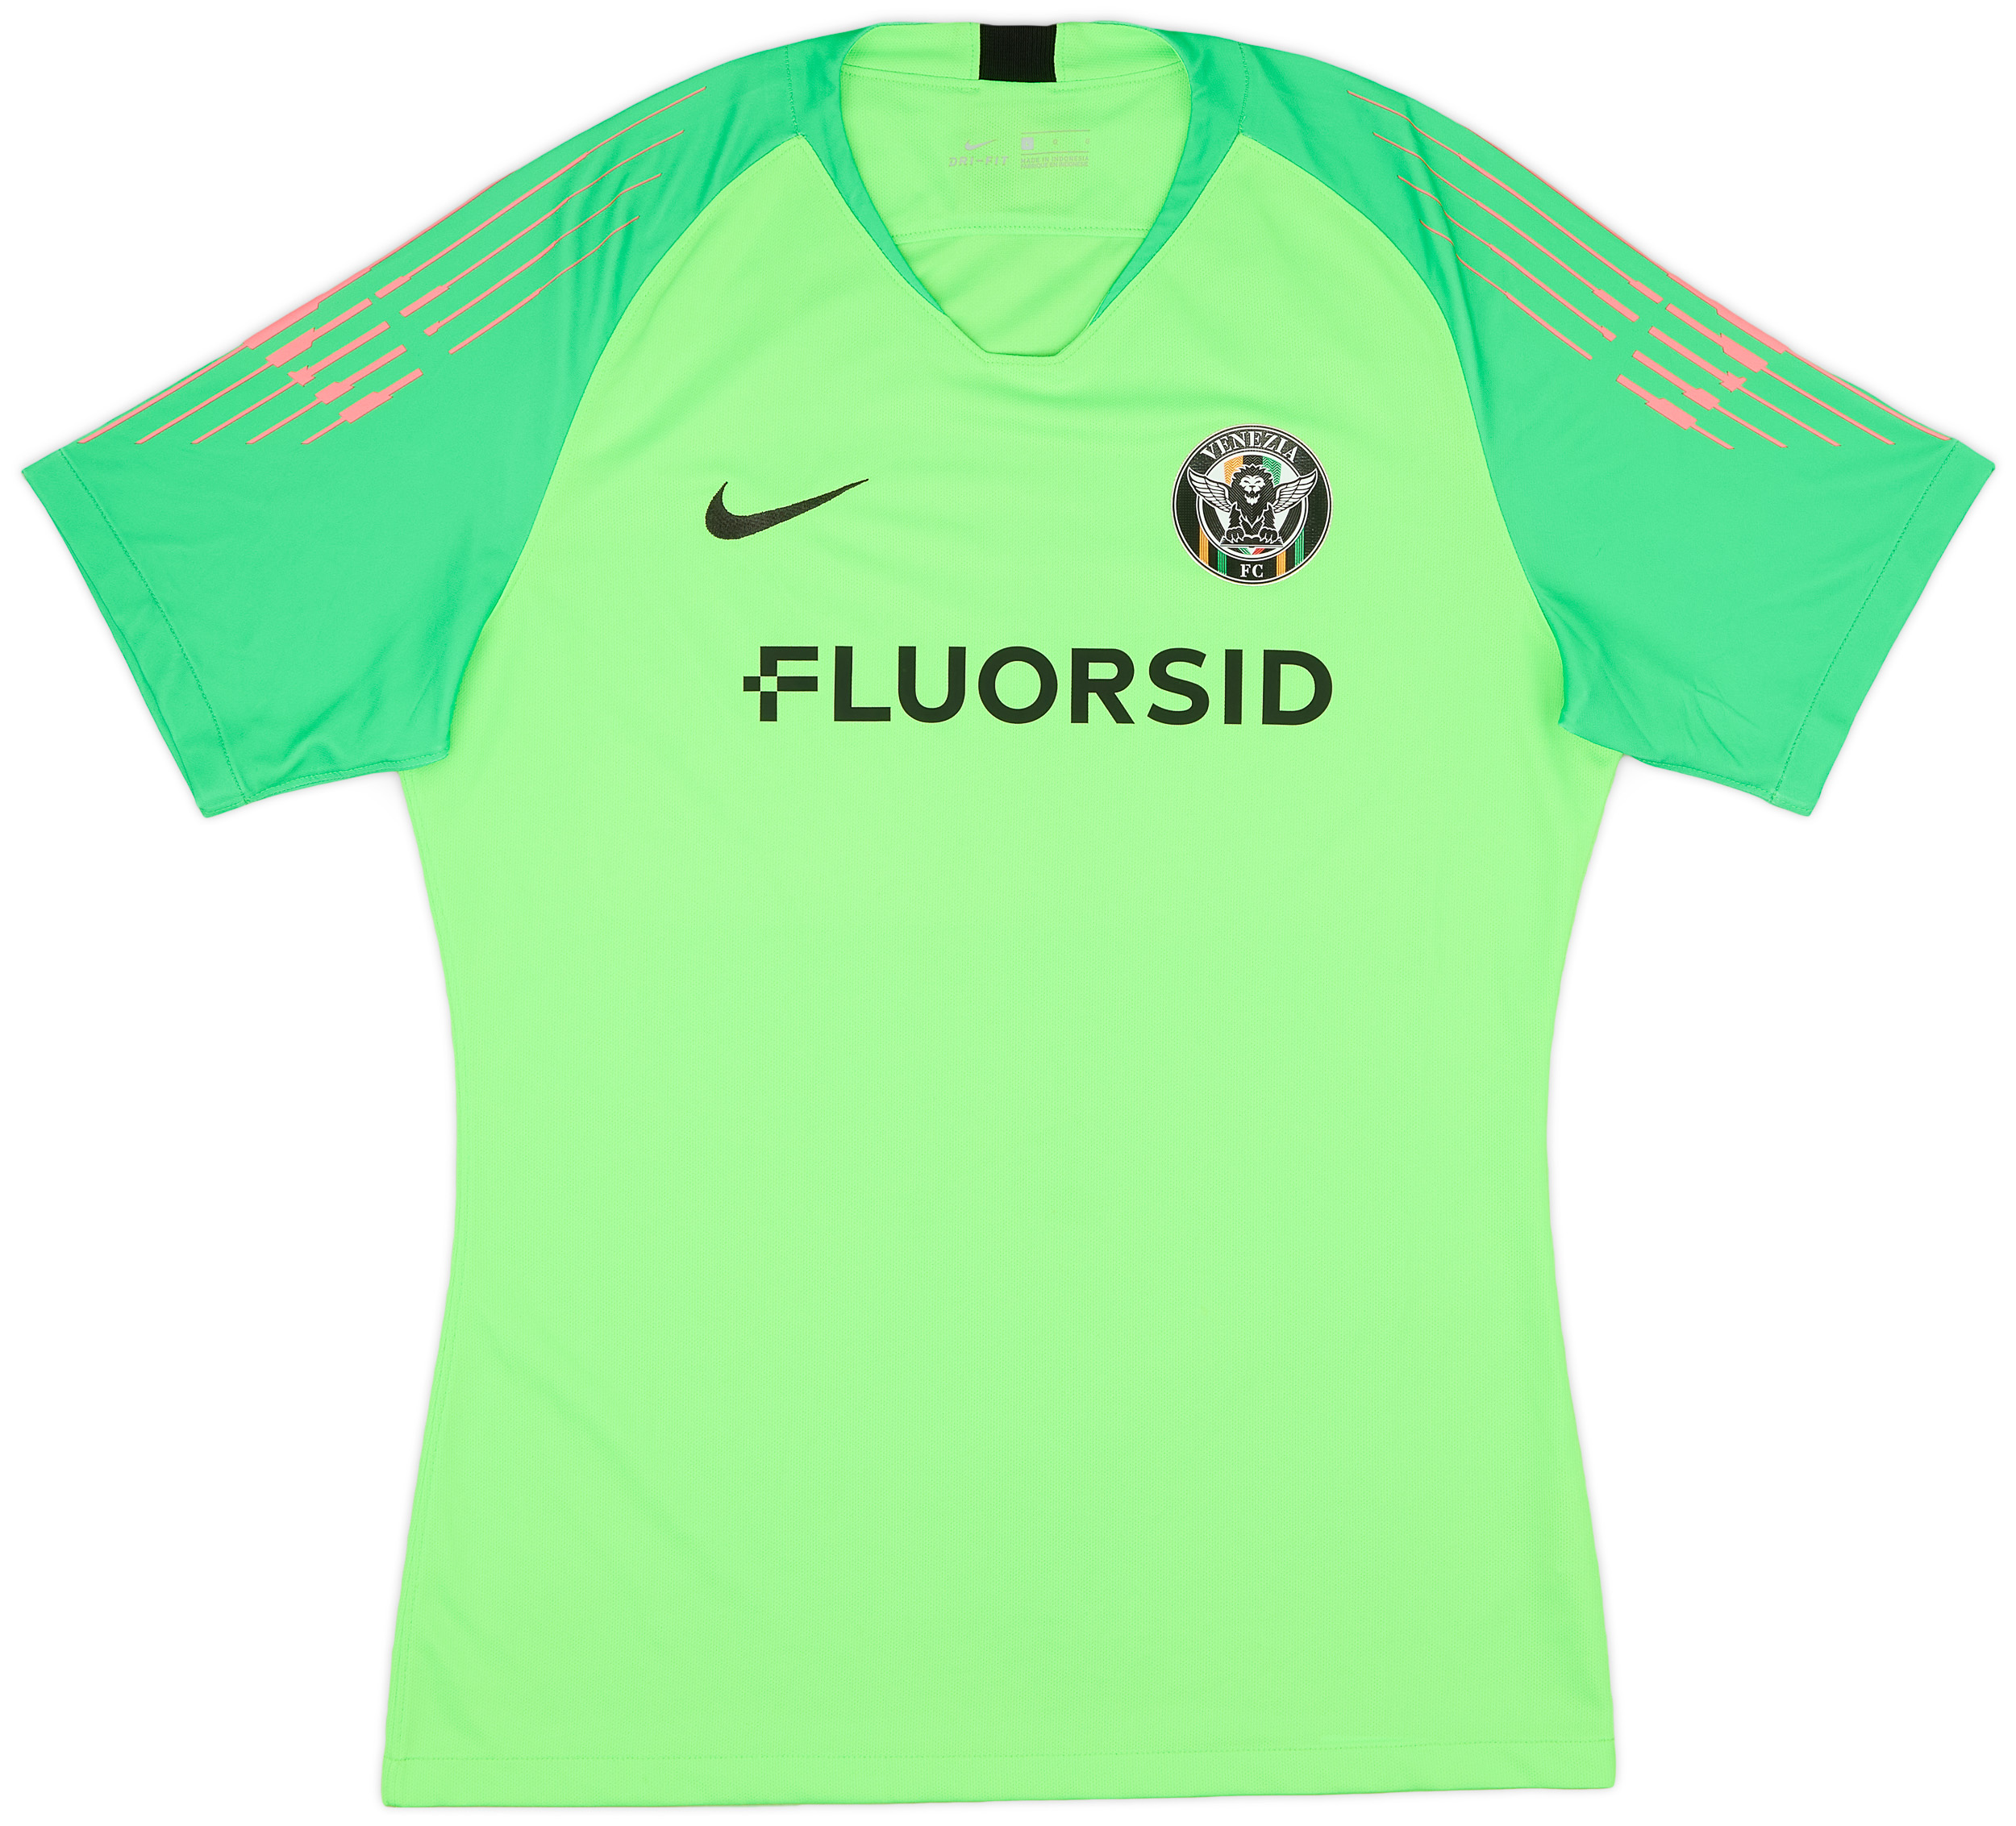 Retro Venezia FC Shirt